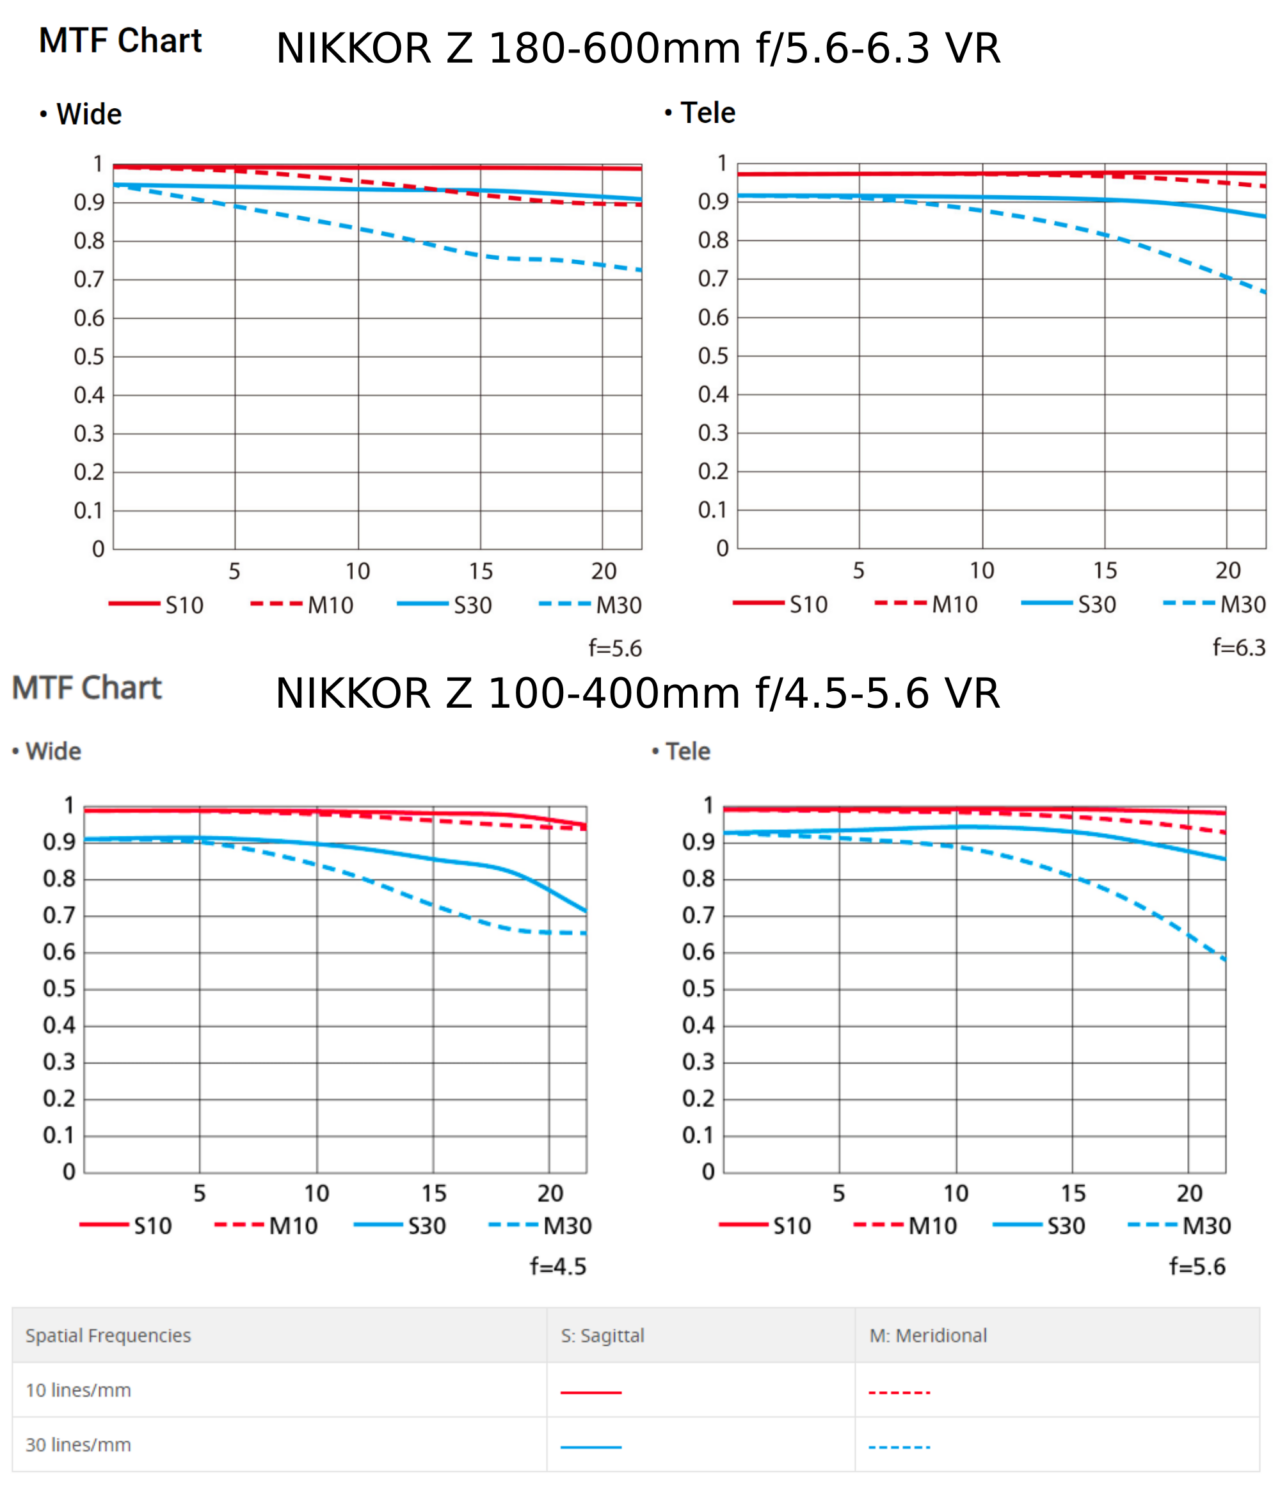 NIKKOR Z 180-600mm Vergleich mit NIKKOR Z 100-400mm, mtfvergleich